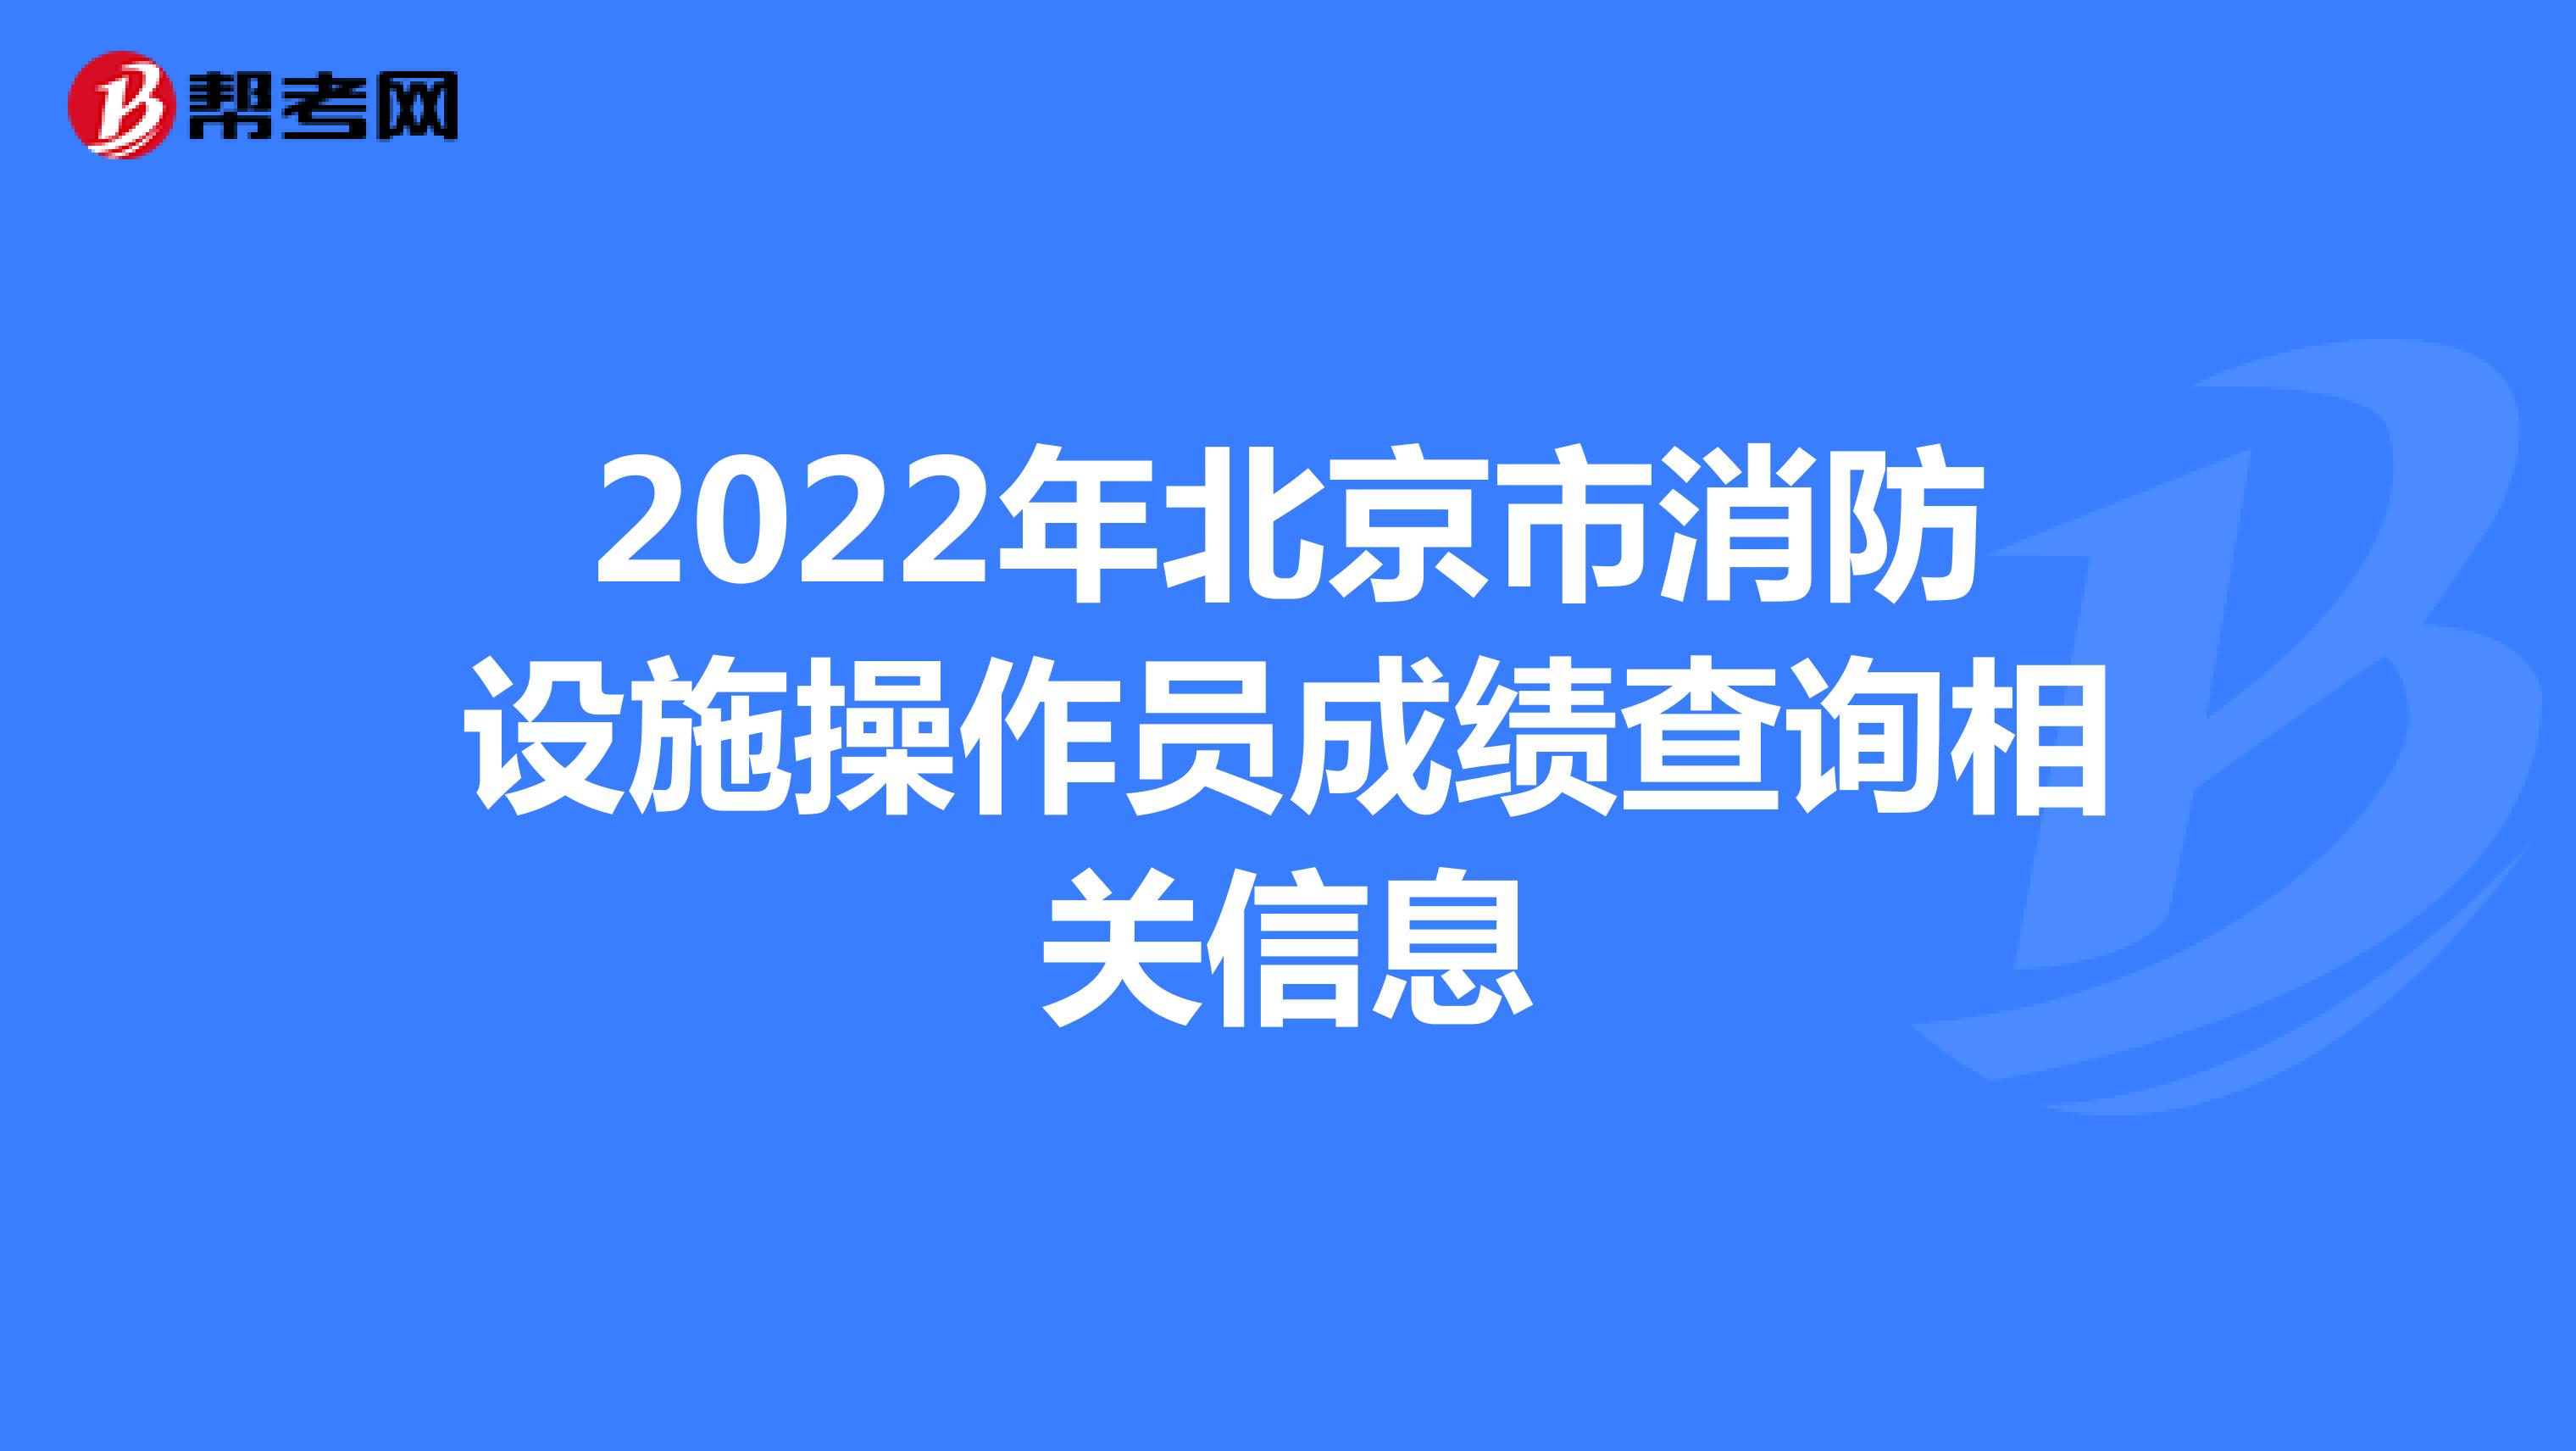 2022年北京市消防设施操作员成绩查询相关信息